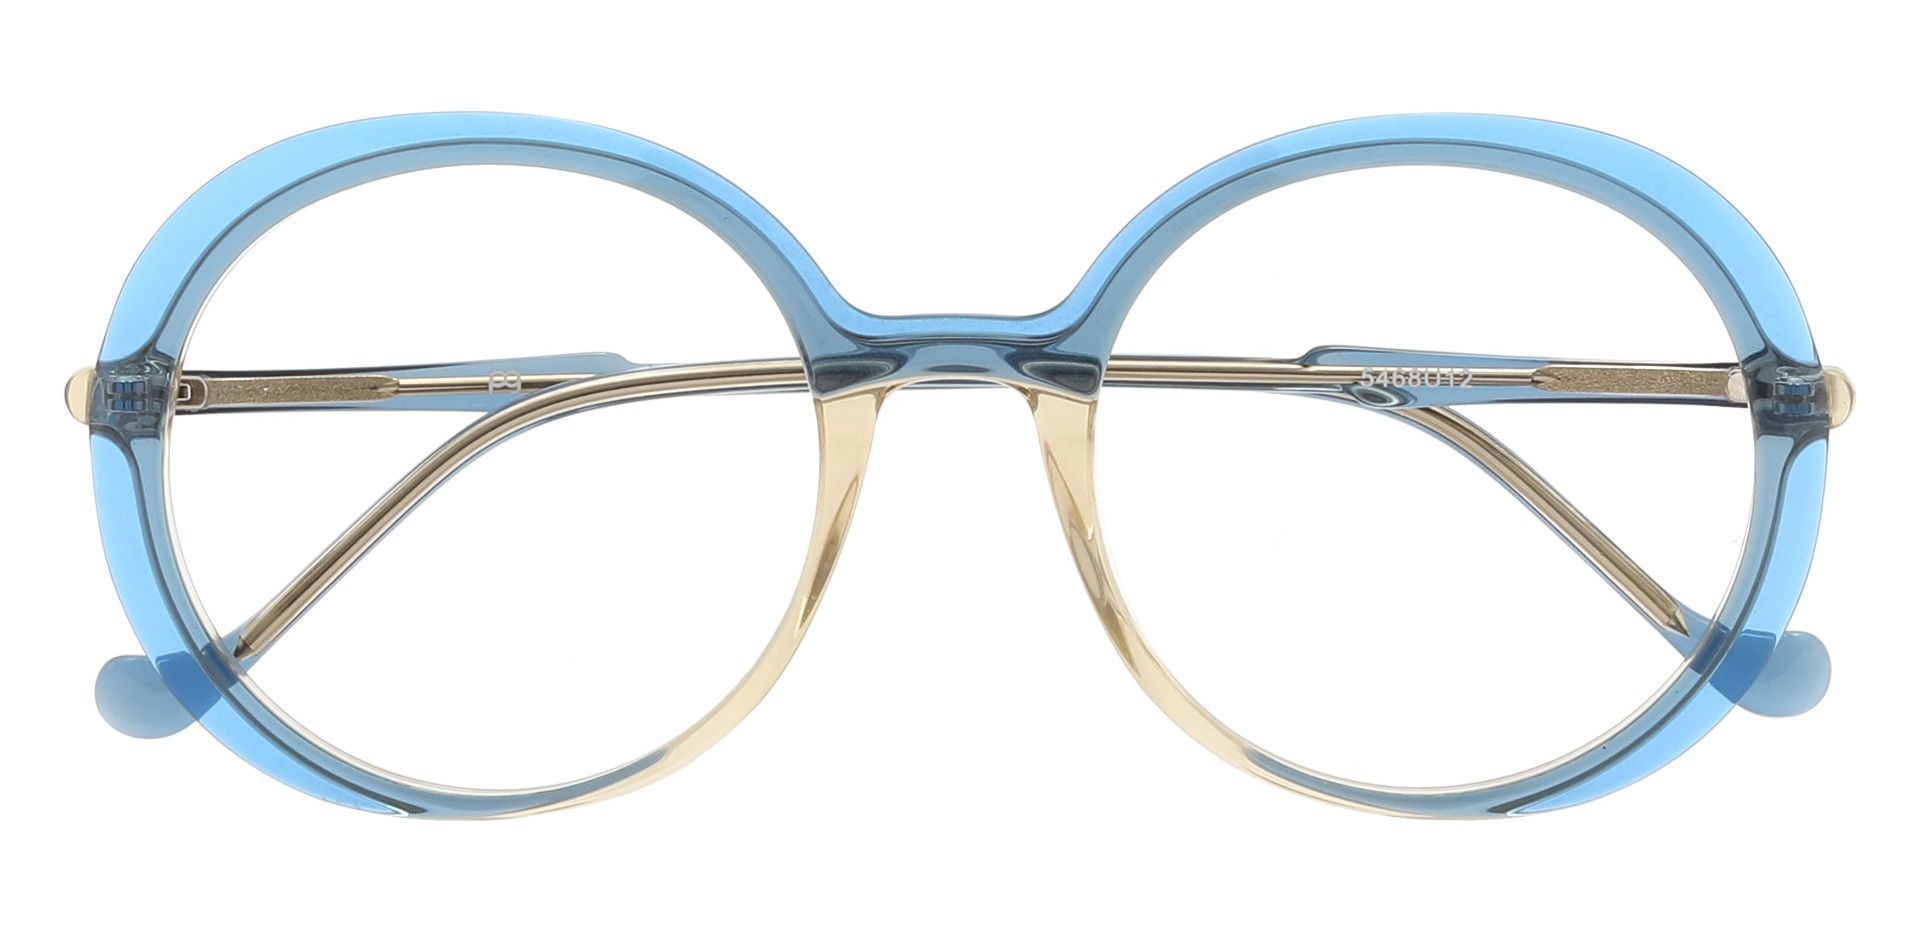 Peralta Round Prescription Glasses - Blue